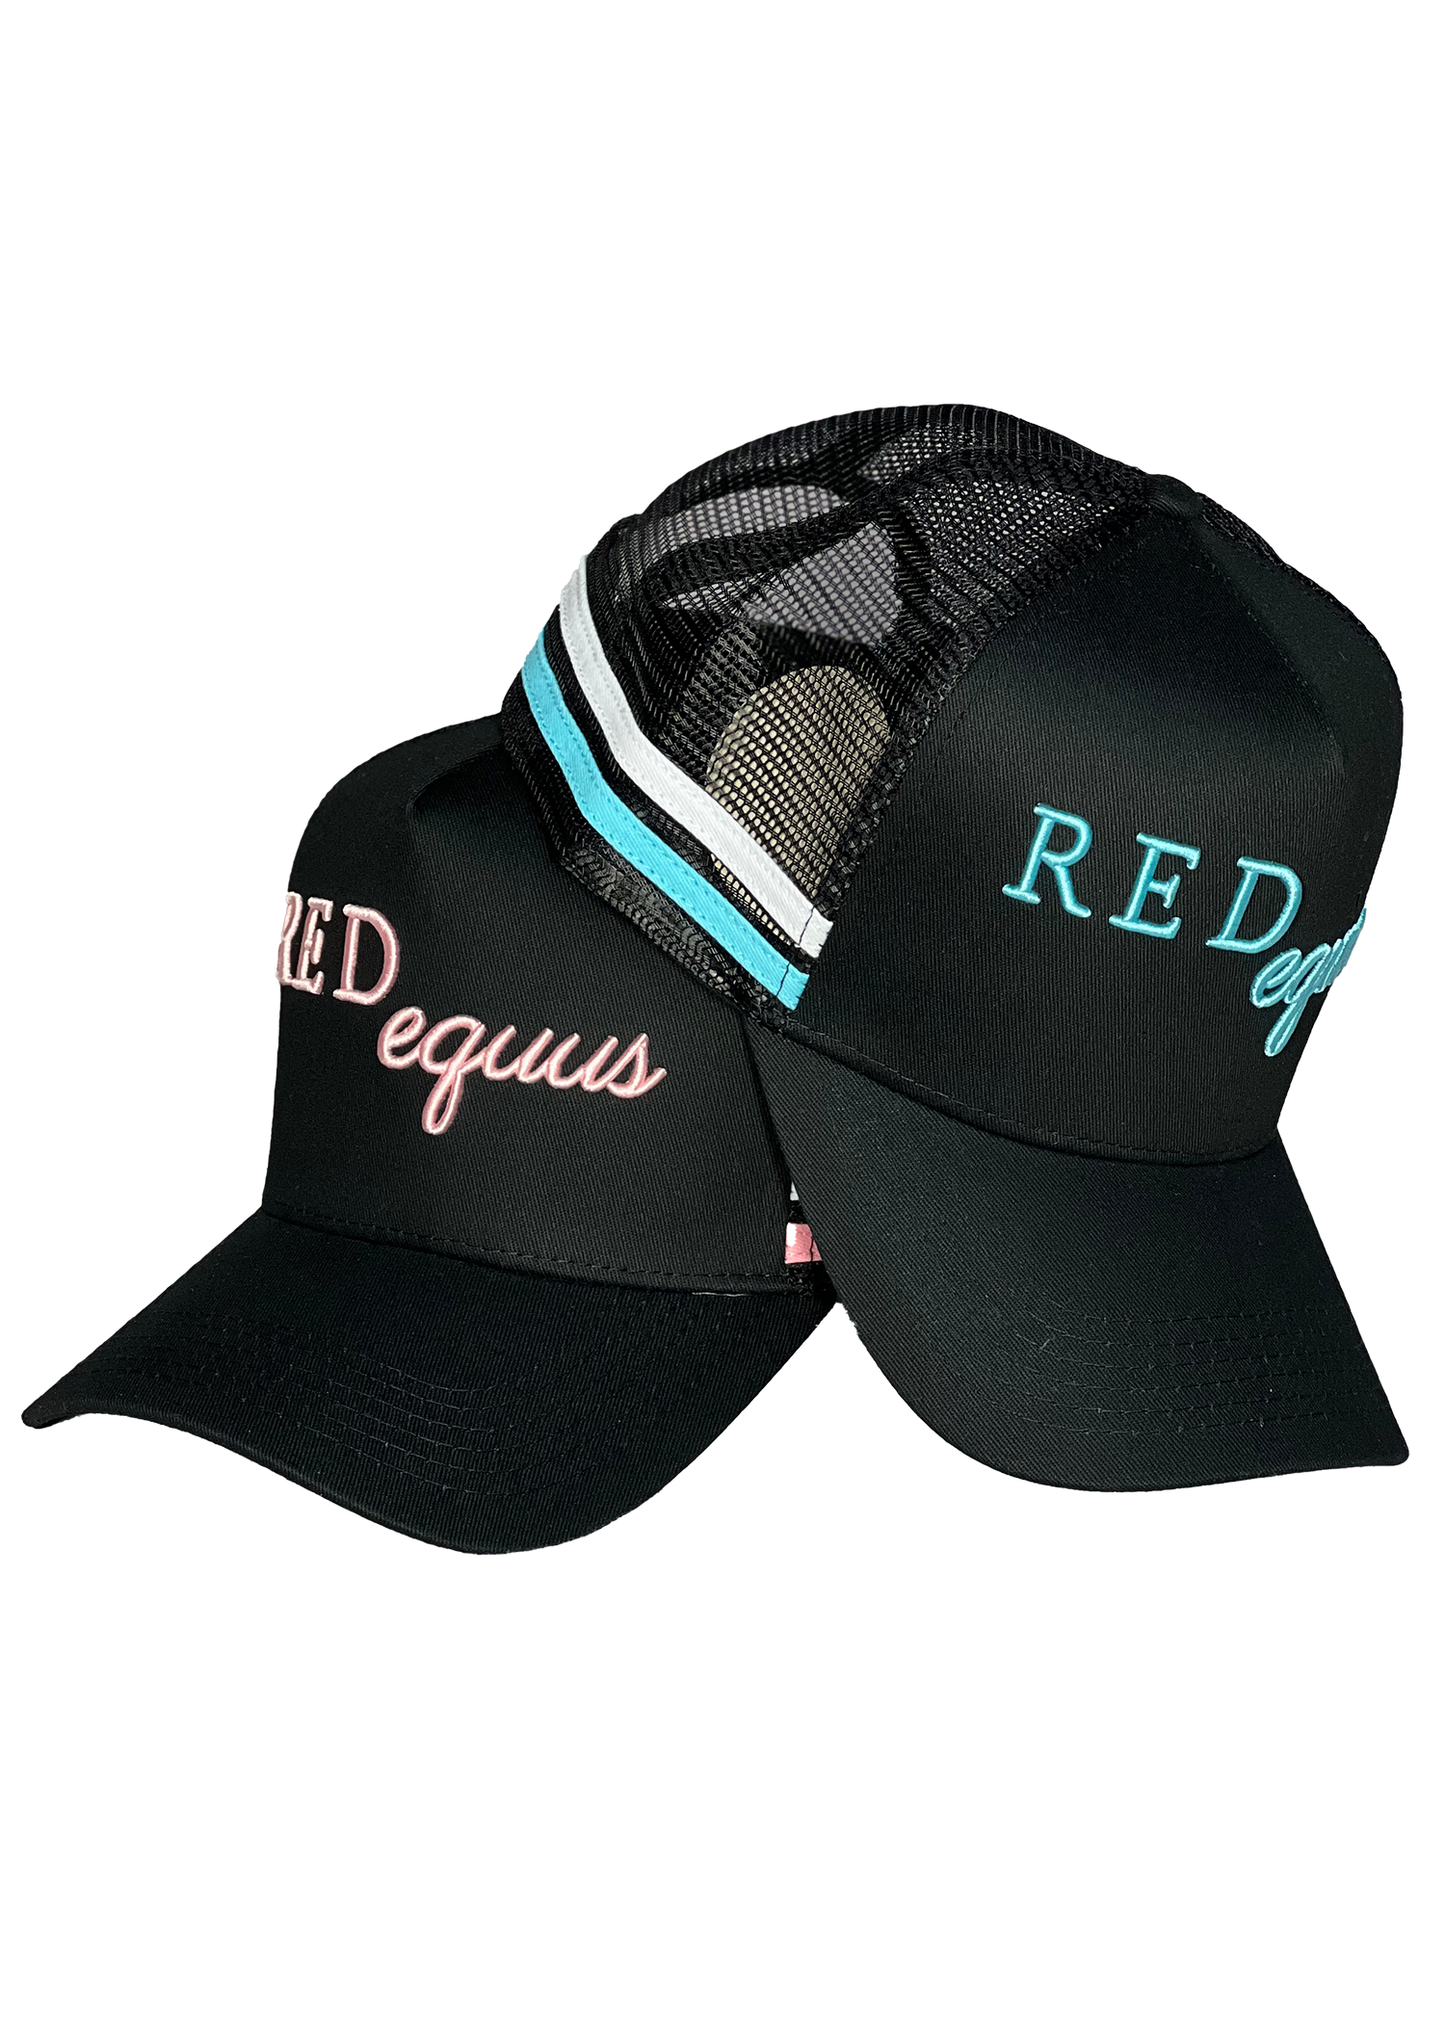 RedEquus - Caps